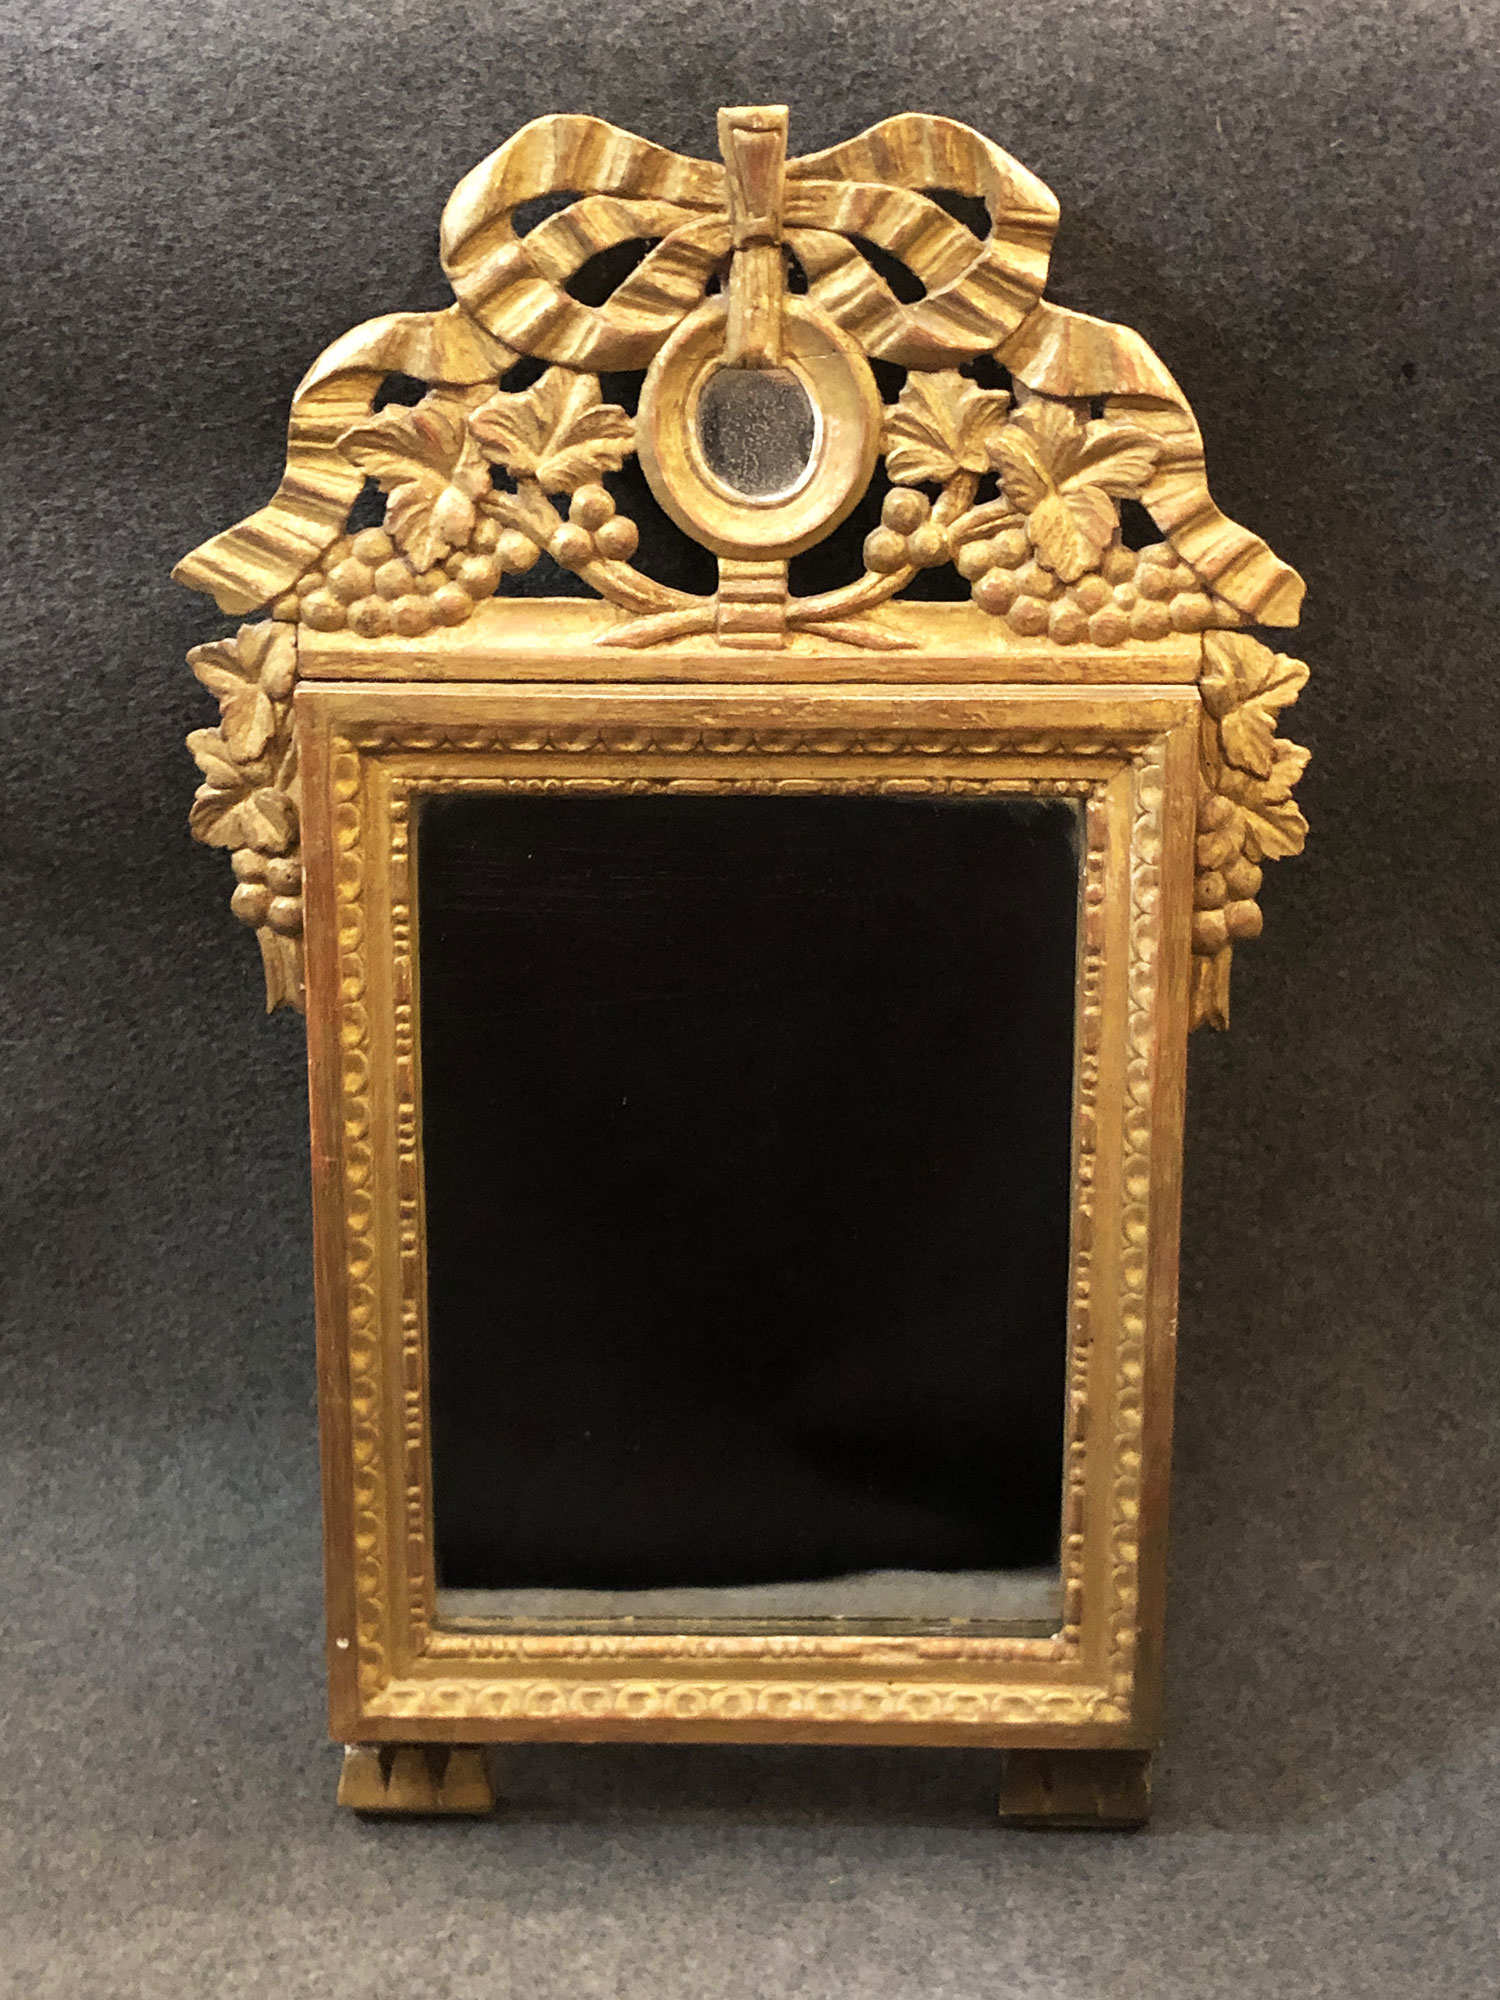 Miroir en bois doré. Époque Louis XVI, XVIIIe siècle